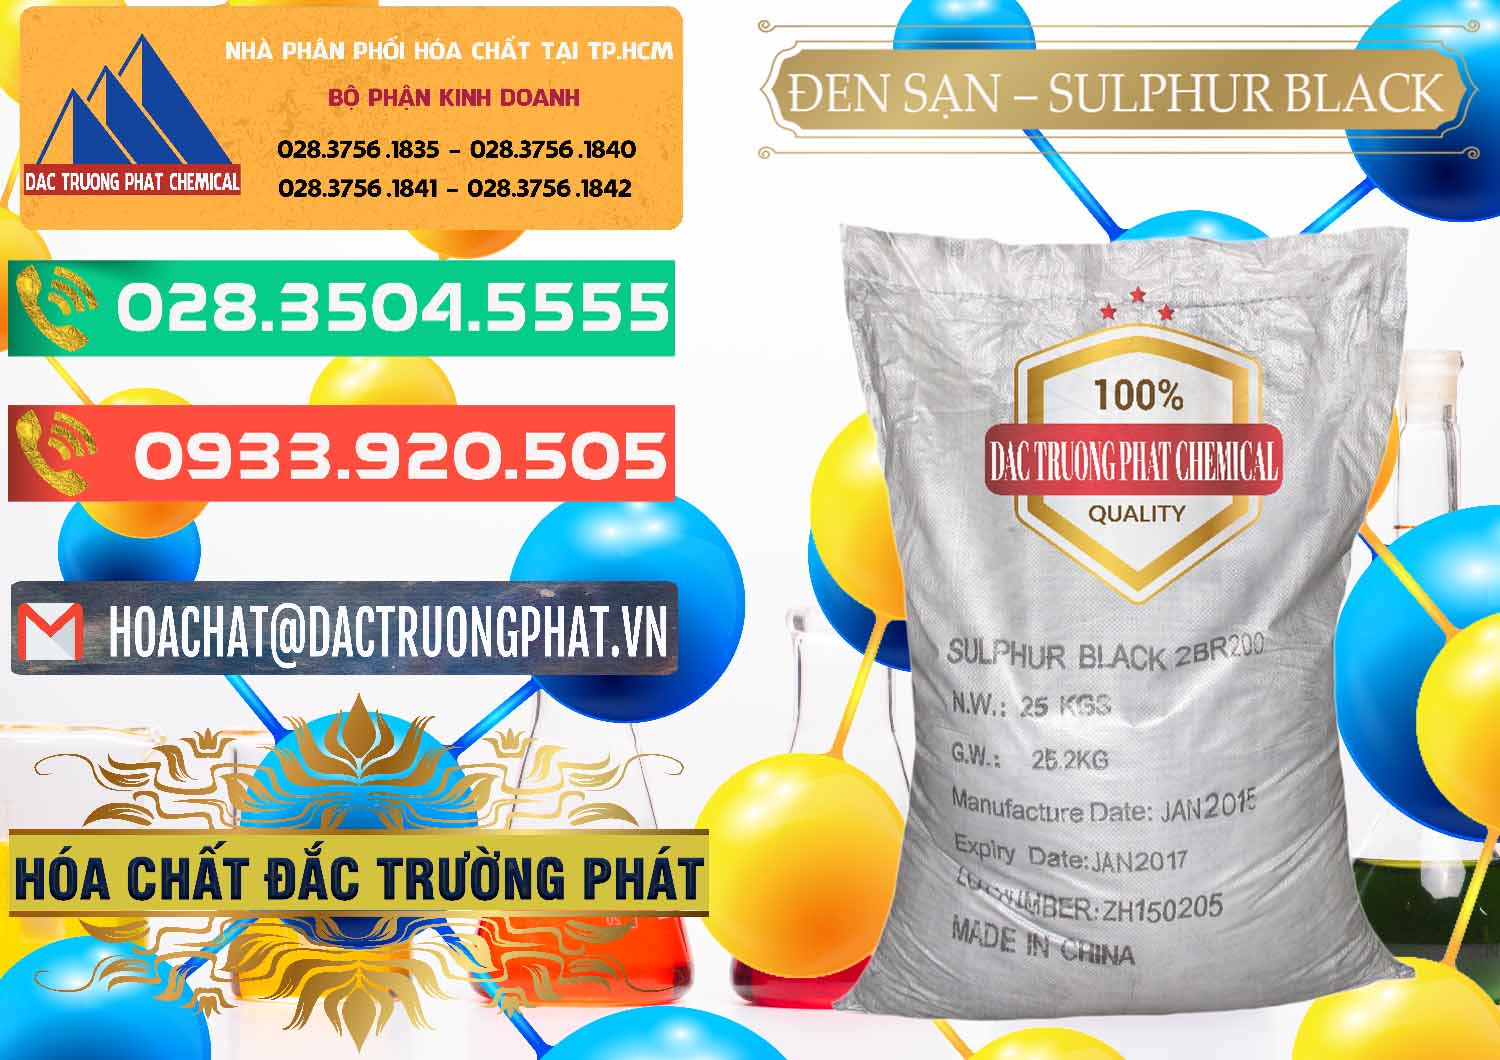 Bán Đen Sạn – Sulphur Black Trung Quốc China - 0062 - Cty chuyên cung cấp - kinh doanh hóa chất tại TP.HCM - congtyhoachat.com.vn